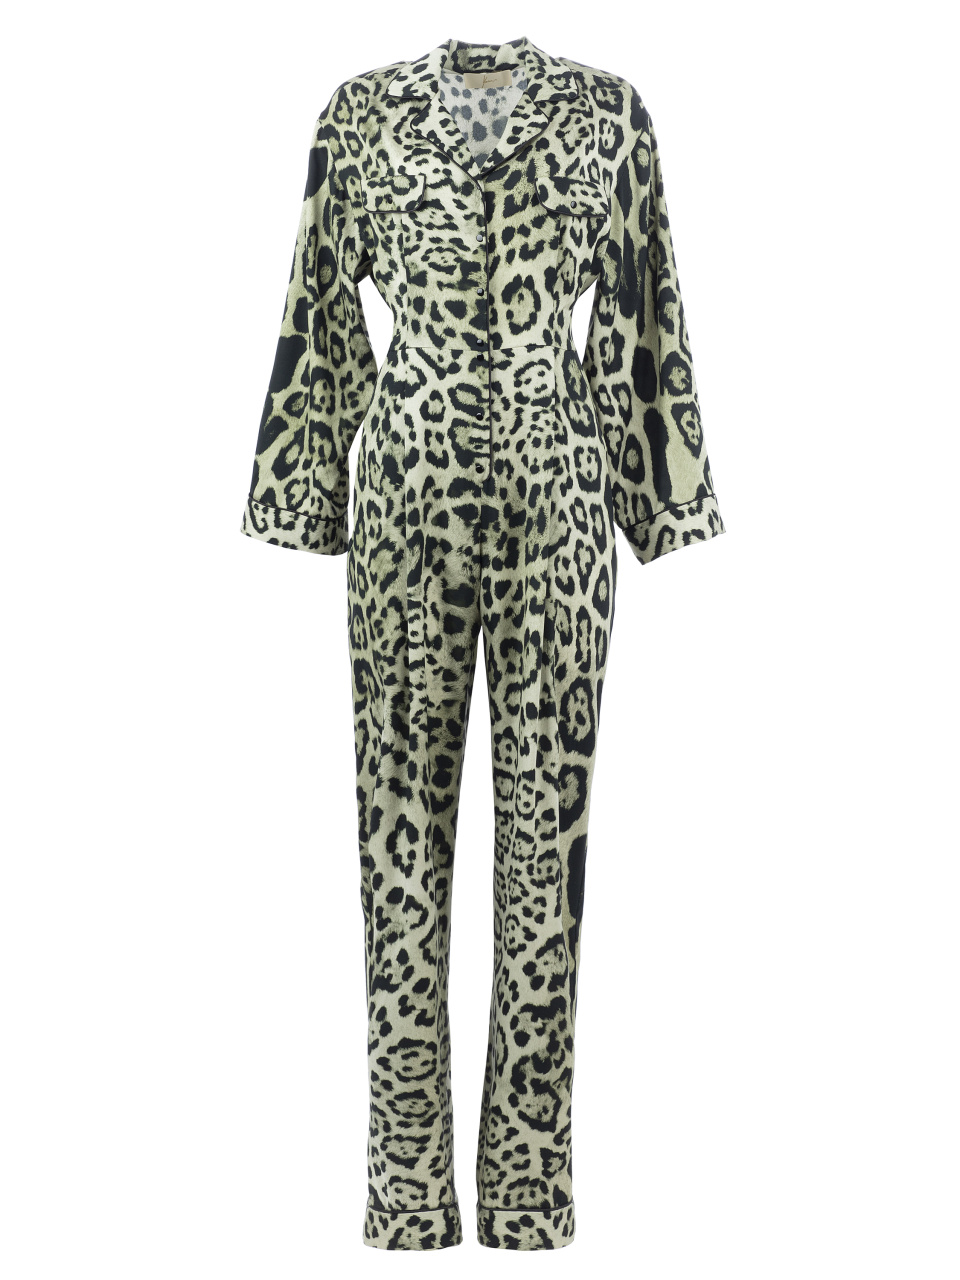 Шелковый пижамный комбинезон с леопардовым принтом, 1